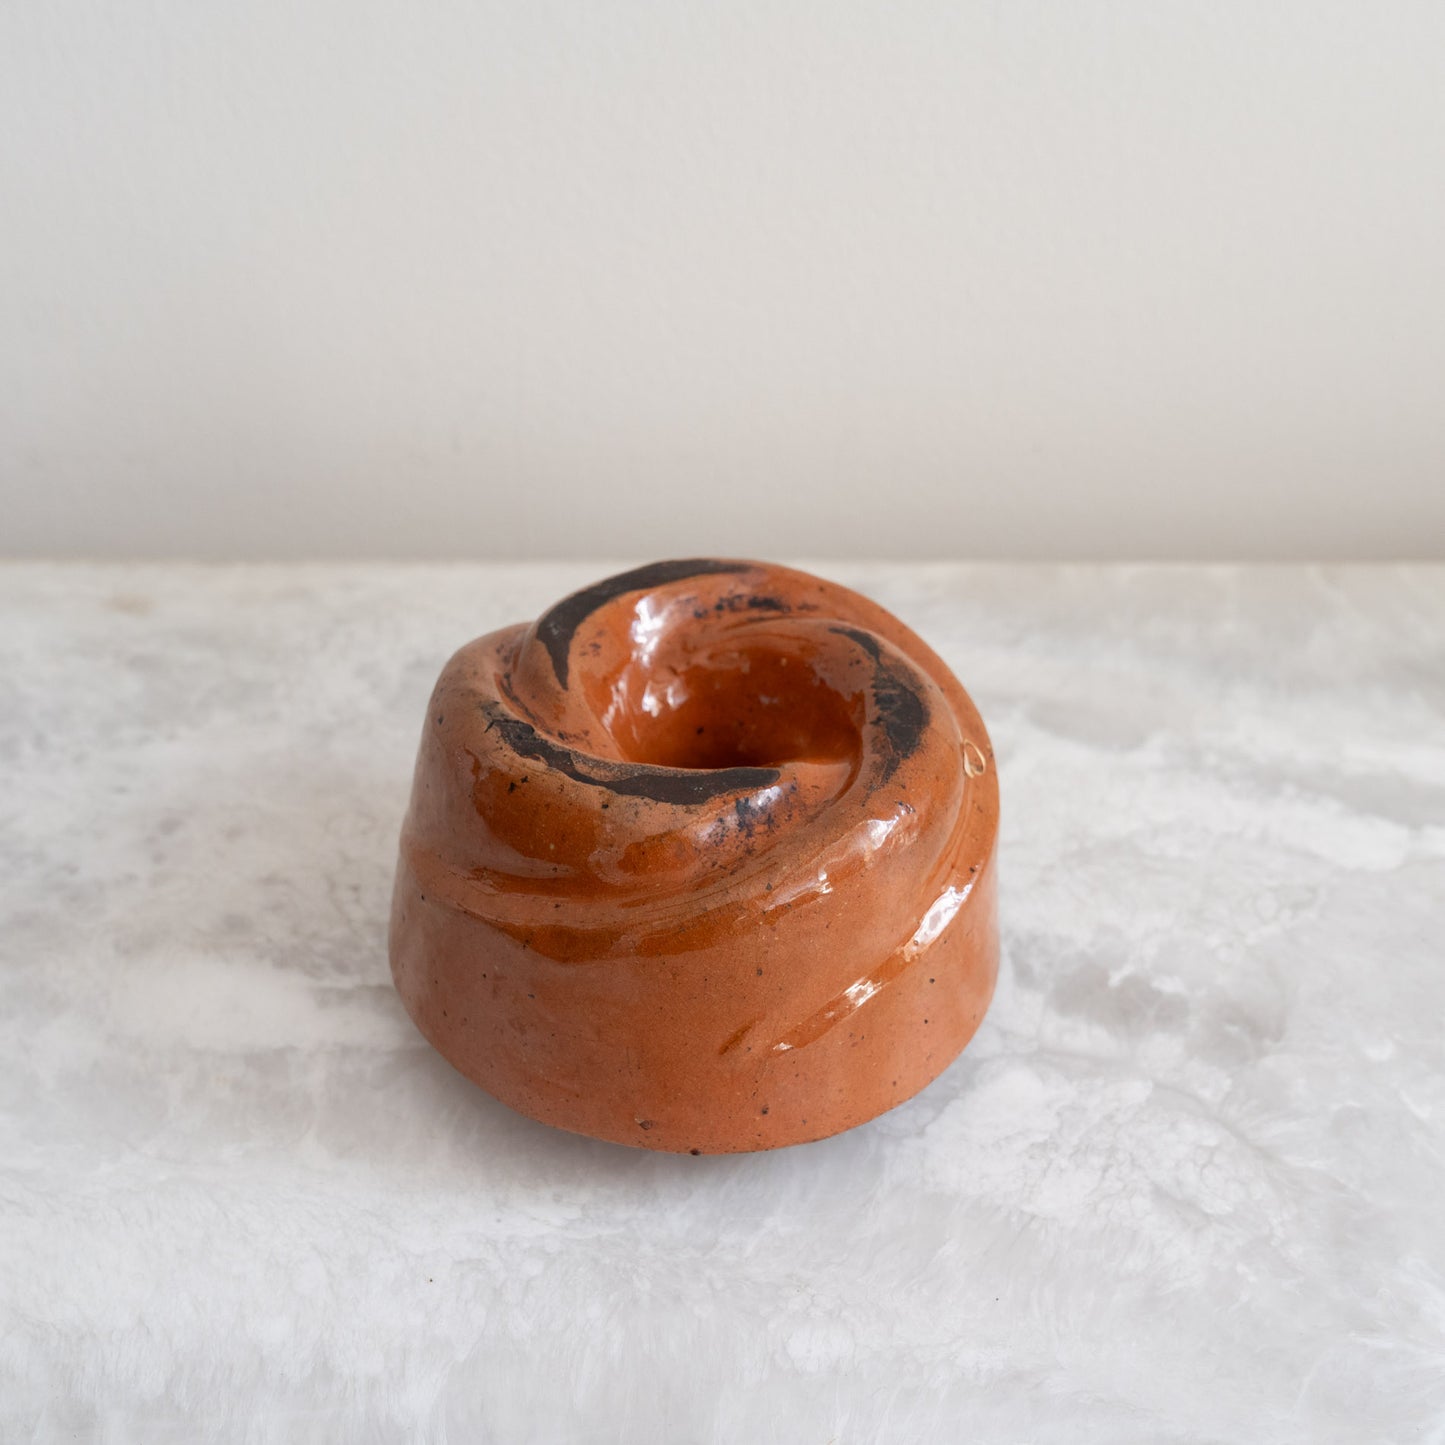 Ceramic Bundt Pan - The Spunky Coconut